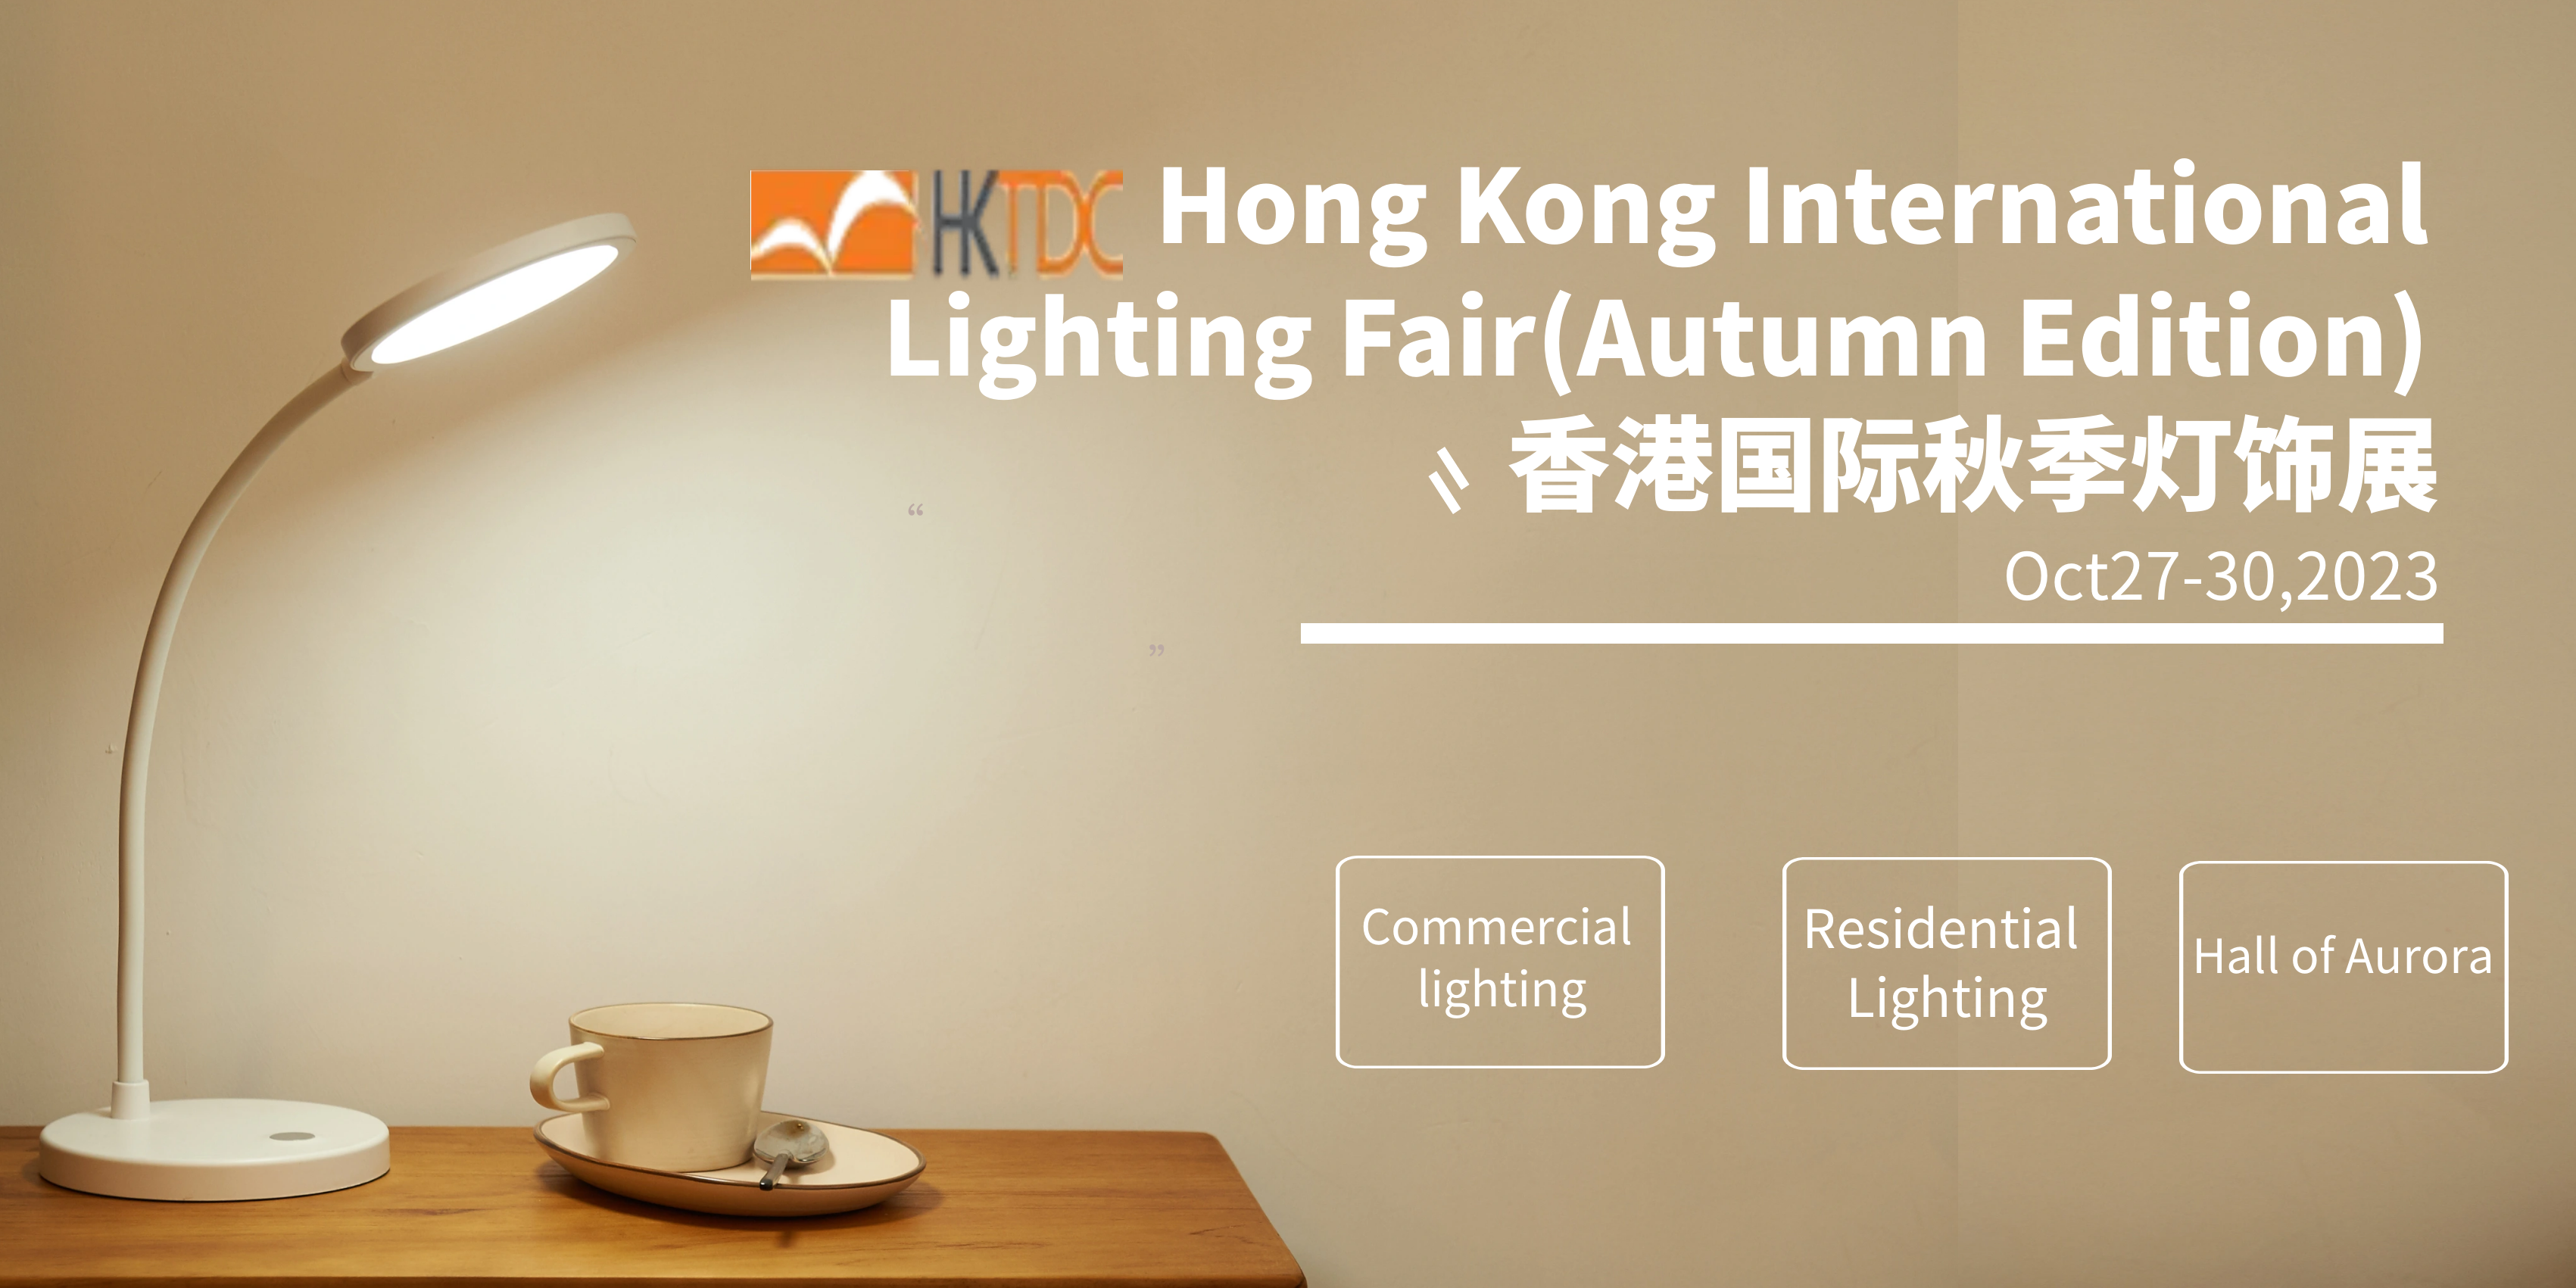 Hong Kong International Lighting Fair (Autumn Edition) 